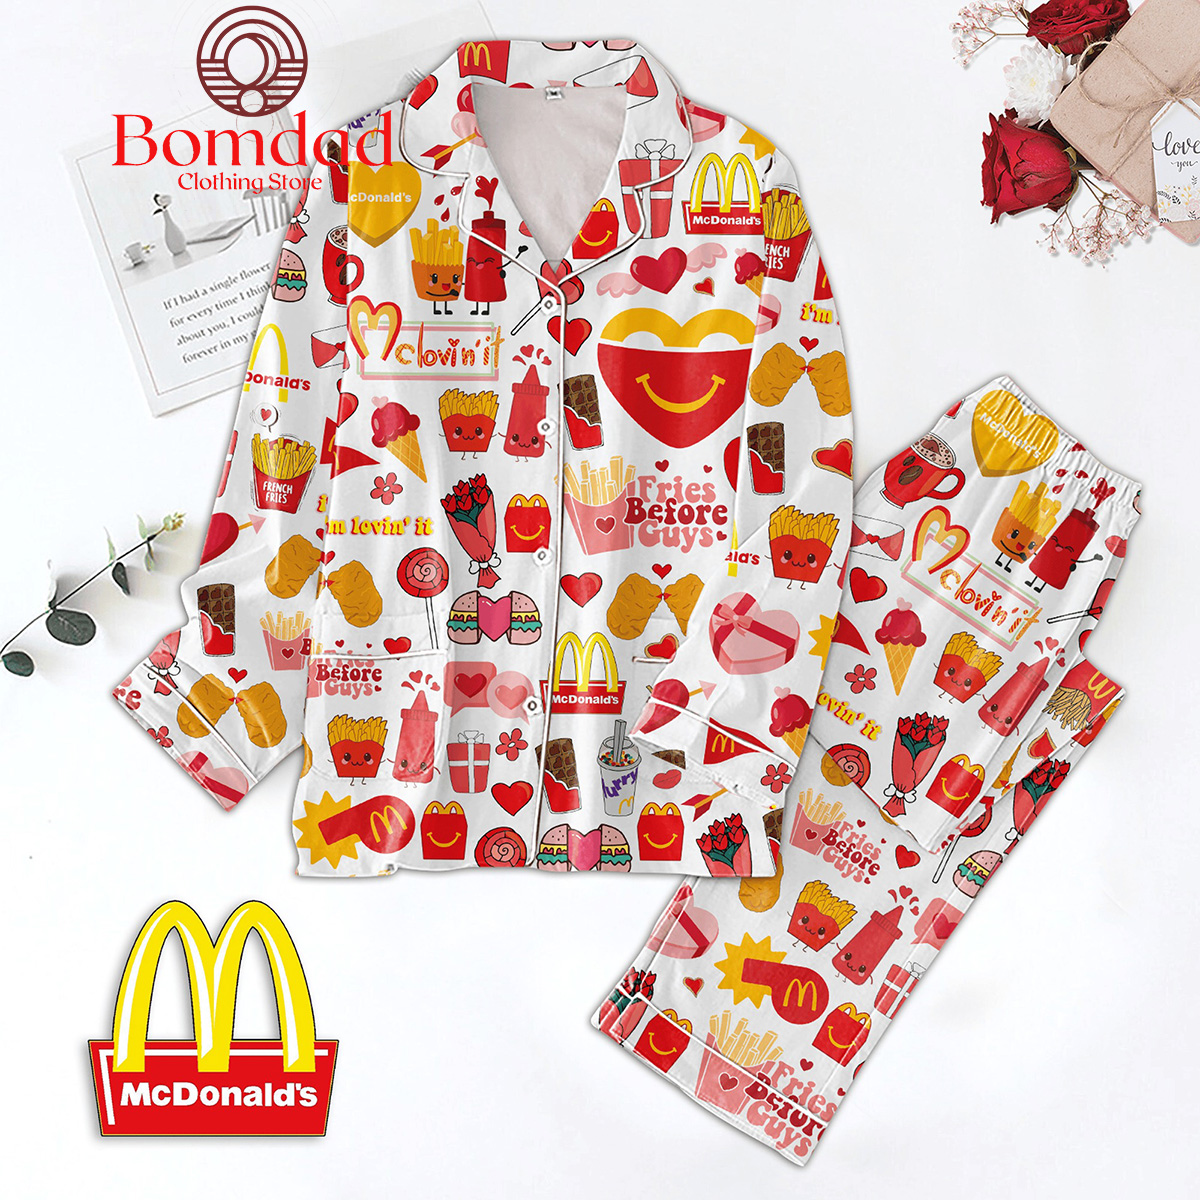 McDonald's Fries Before Guys Pajamas Set - Bomdad